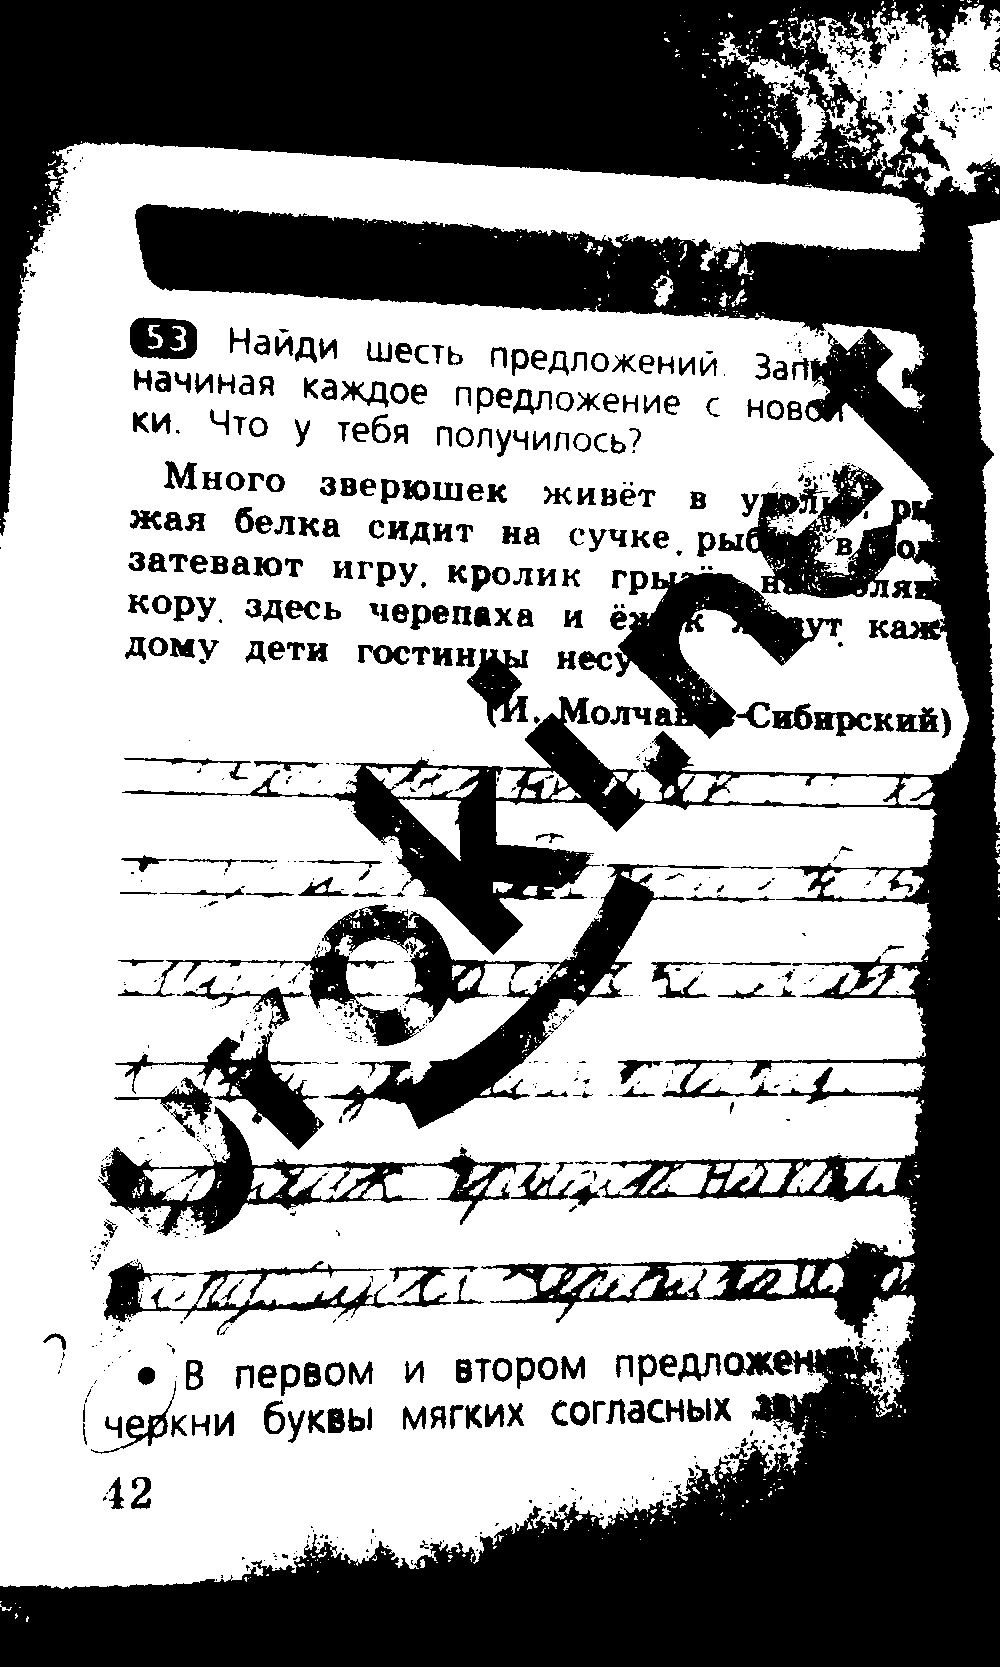 ГДЗ Русский язык 2 класс - стр. 42